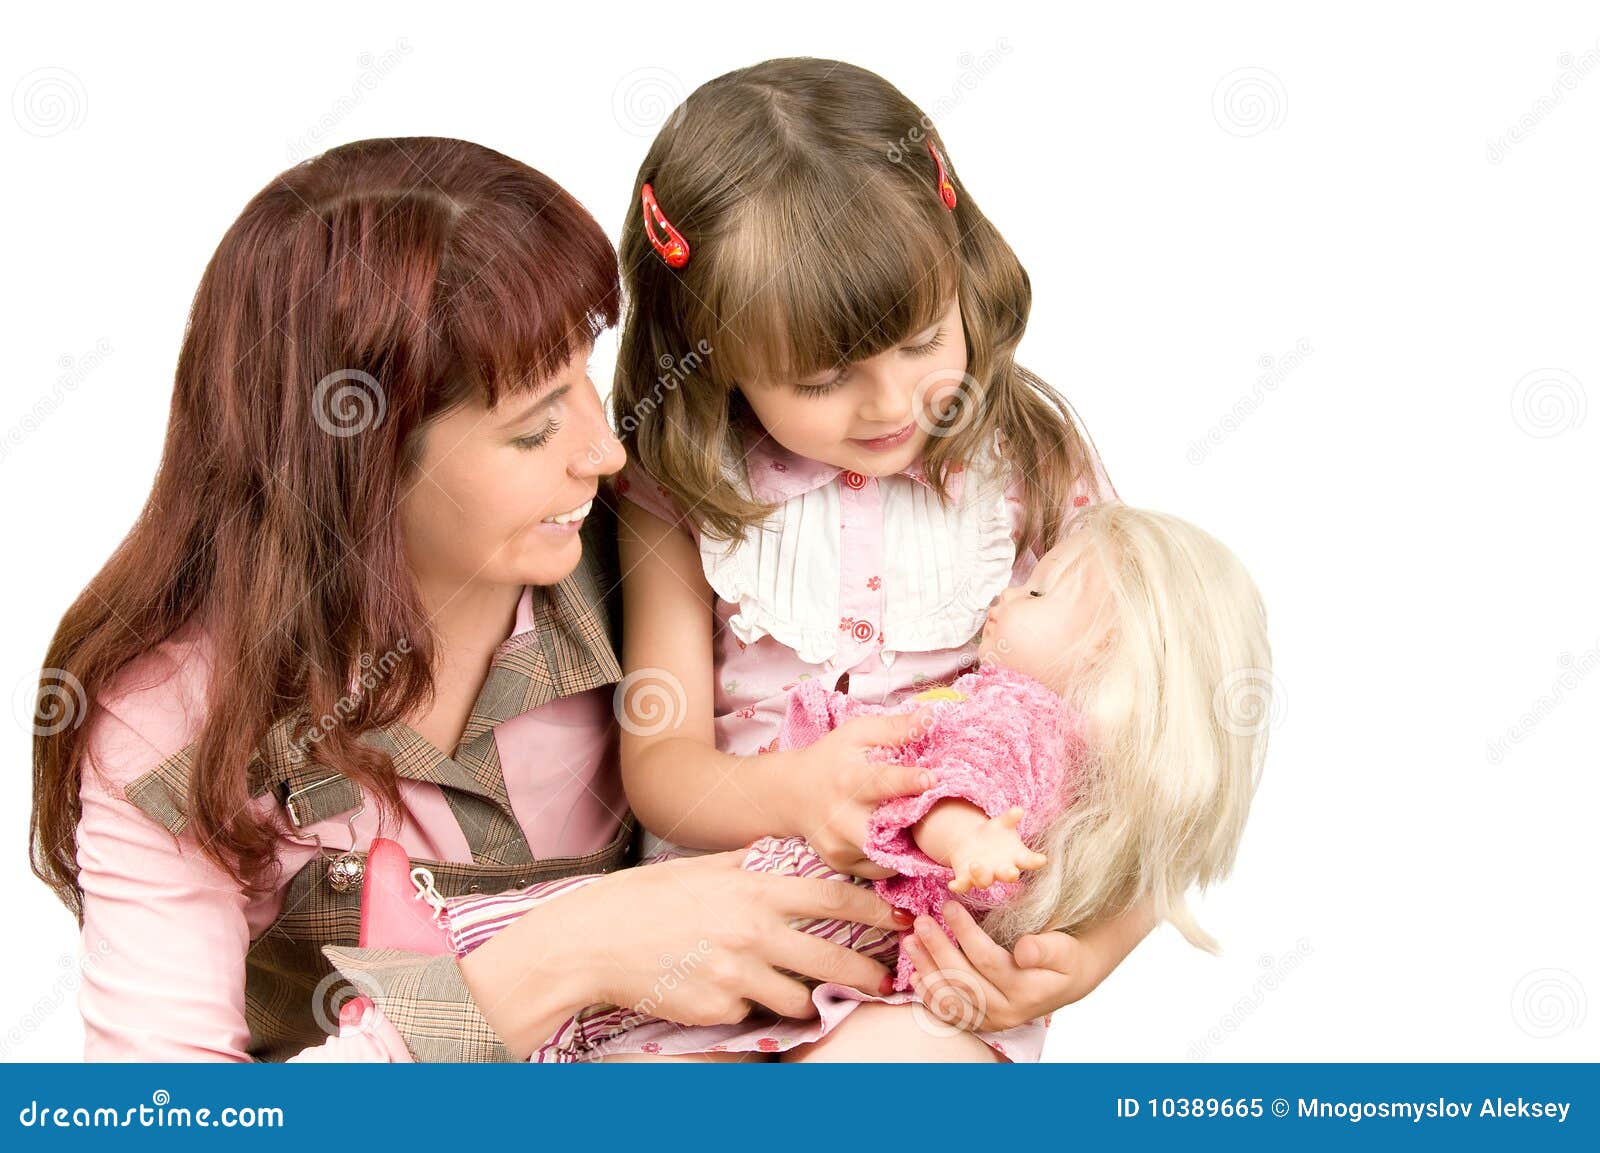 Игрушки про маму. Куклы для девочек. Мама и дочка. Девочка с мамой. Мама с дочкой играют в куклы.